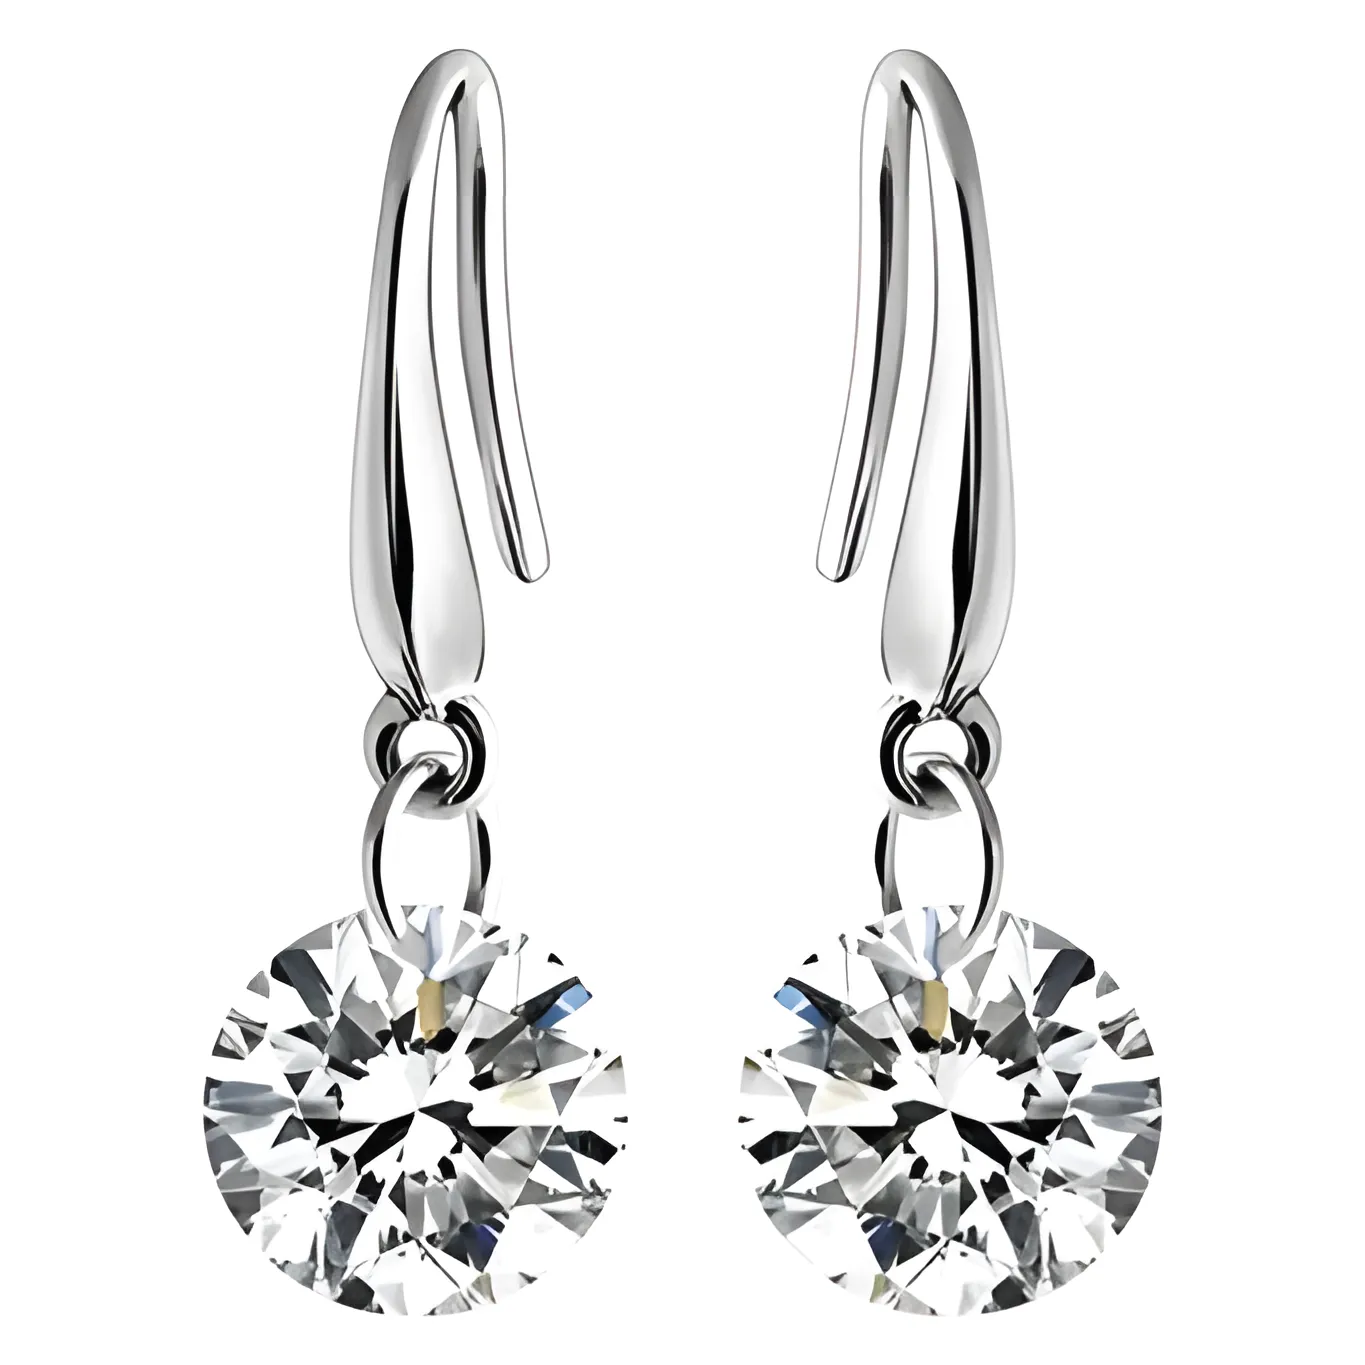 Free Floating Diamonds Earrings By Swarovski Elements